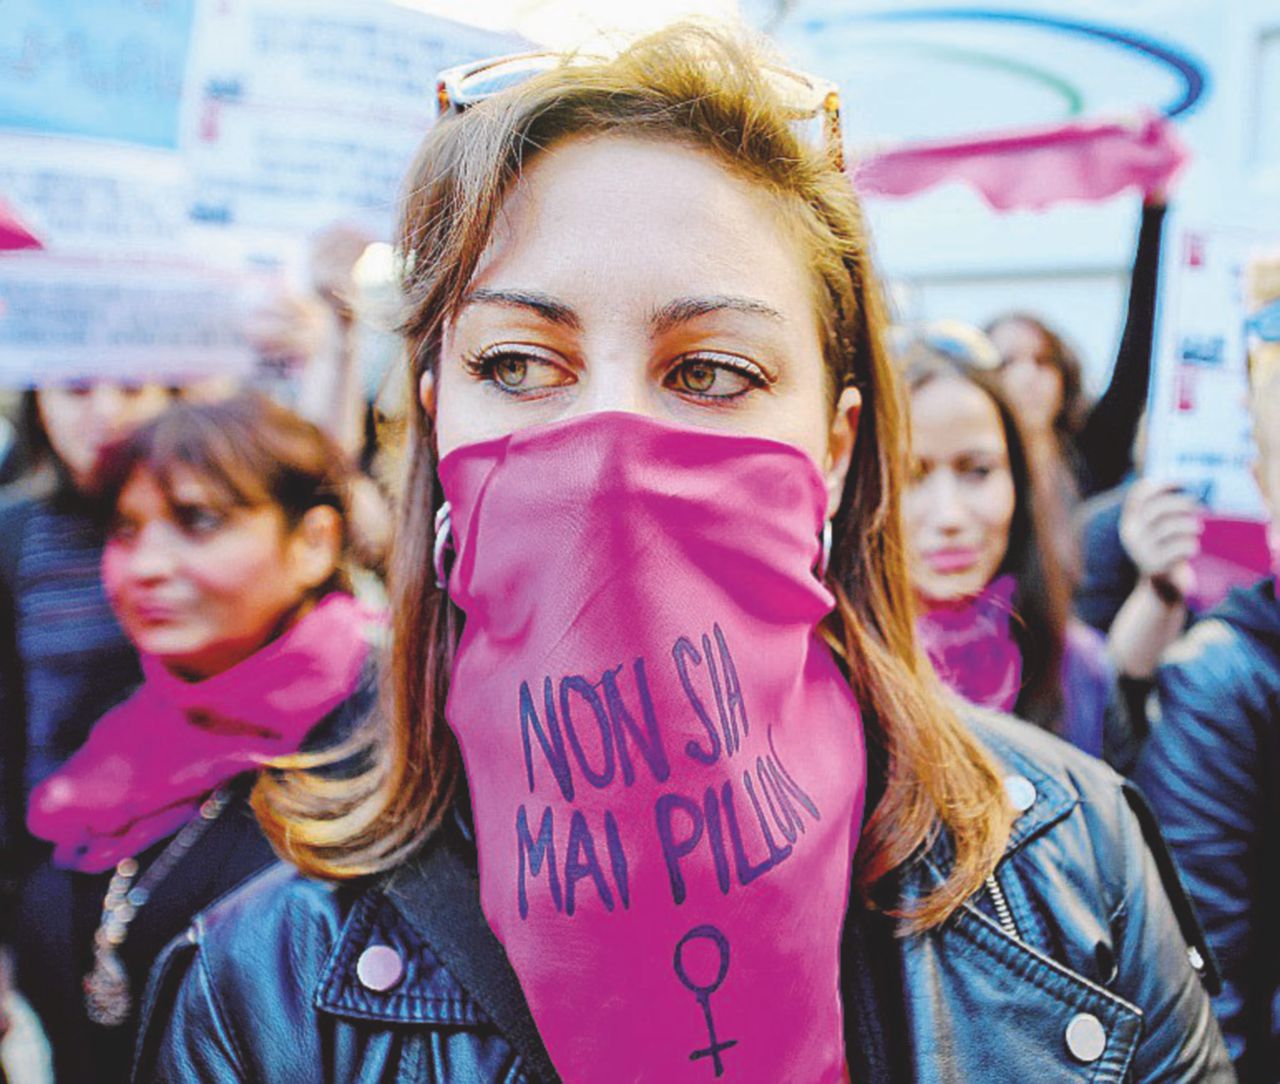 Copertina di “È contro le donne! ”, 60 piazze contro il ddl Pillon